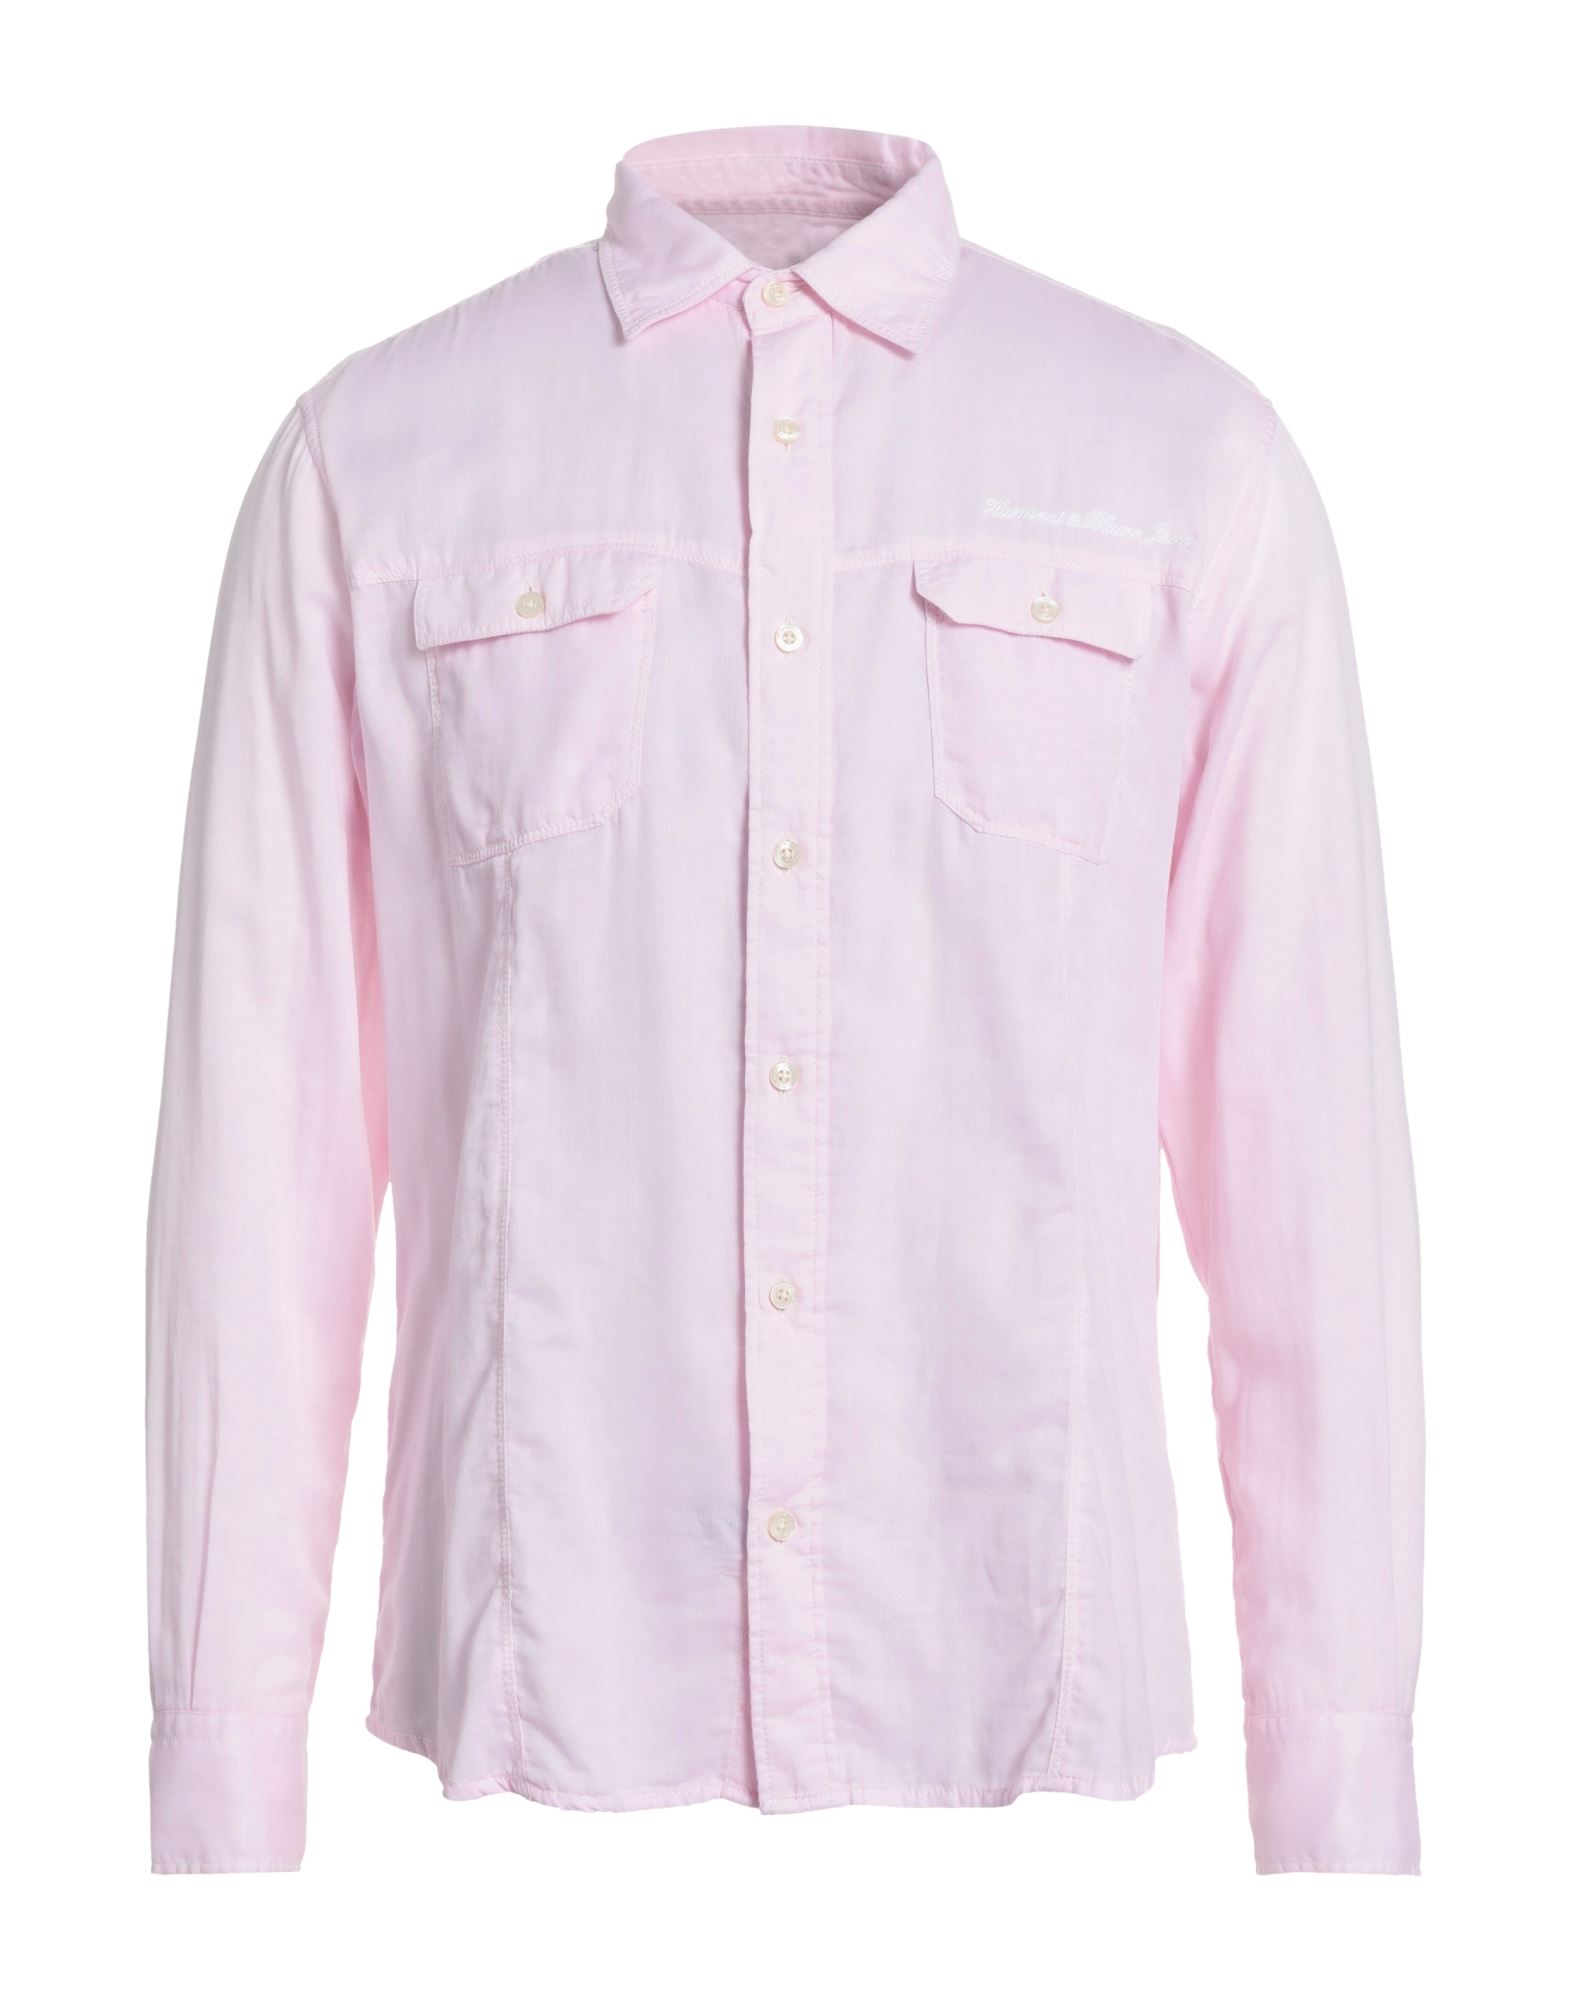 Harmont & Blaine Man Shirt Pink Size M Cotton